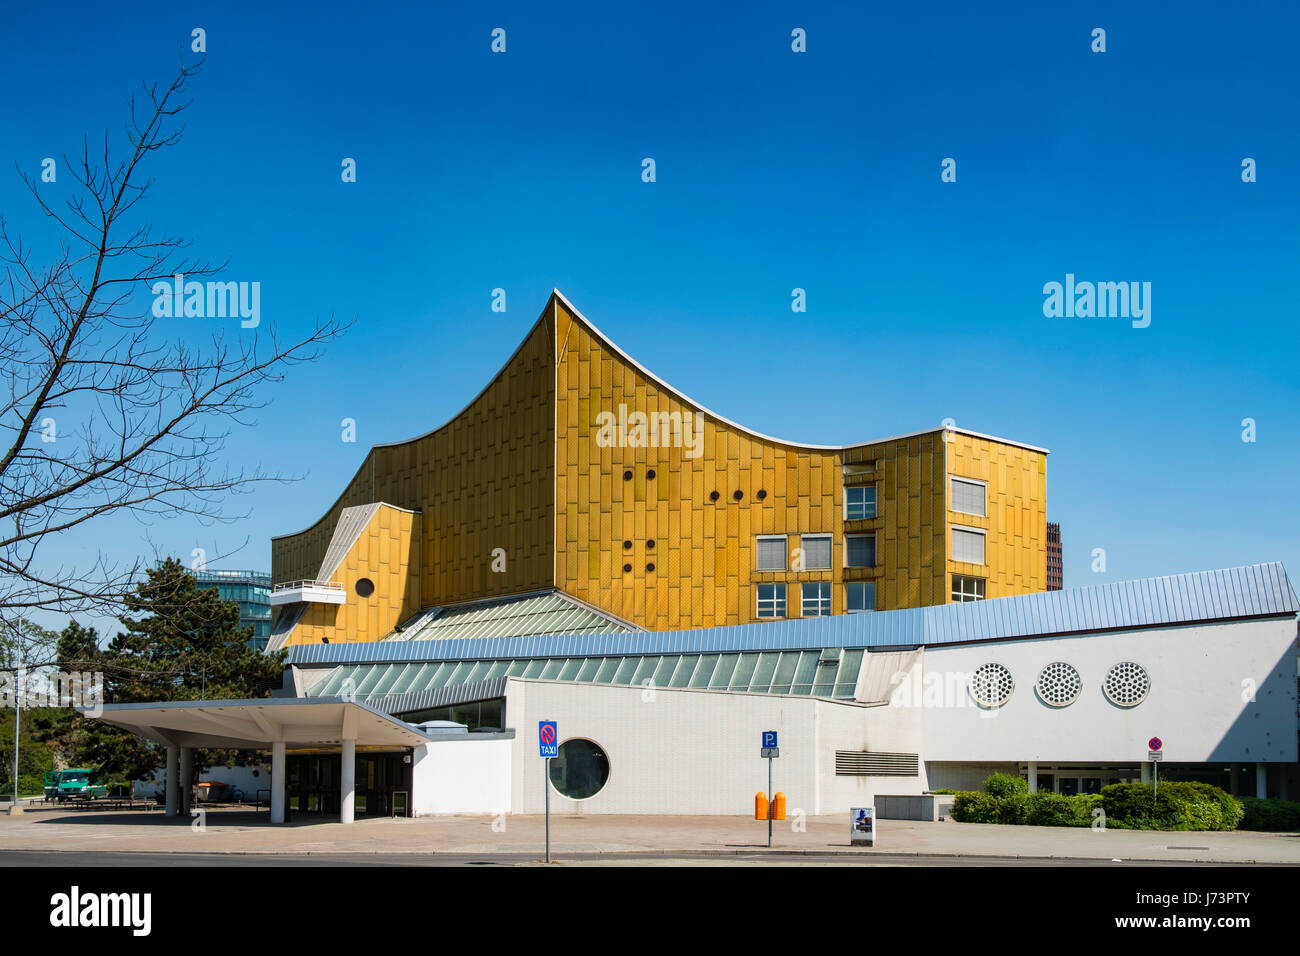 Vue extérieure de la salle de concert Philharmonie de Berlin, la maison d'Orchestre Philharmonique de Berlin (Berliner Philharmoniker) orchestra à Berlin, Allemagne Banque D'Images